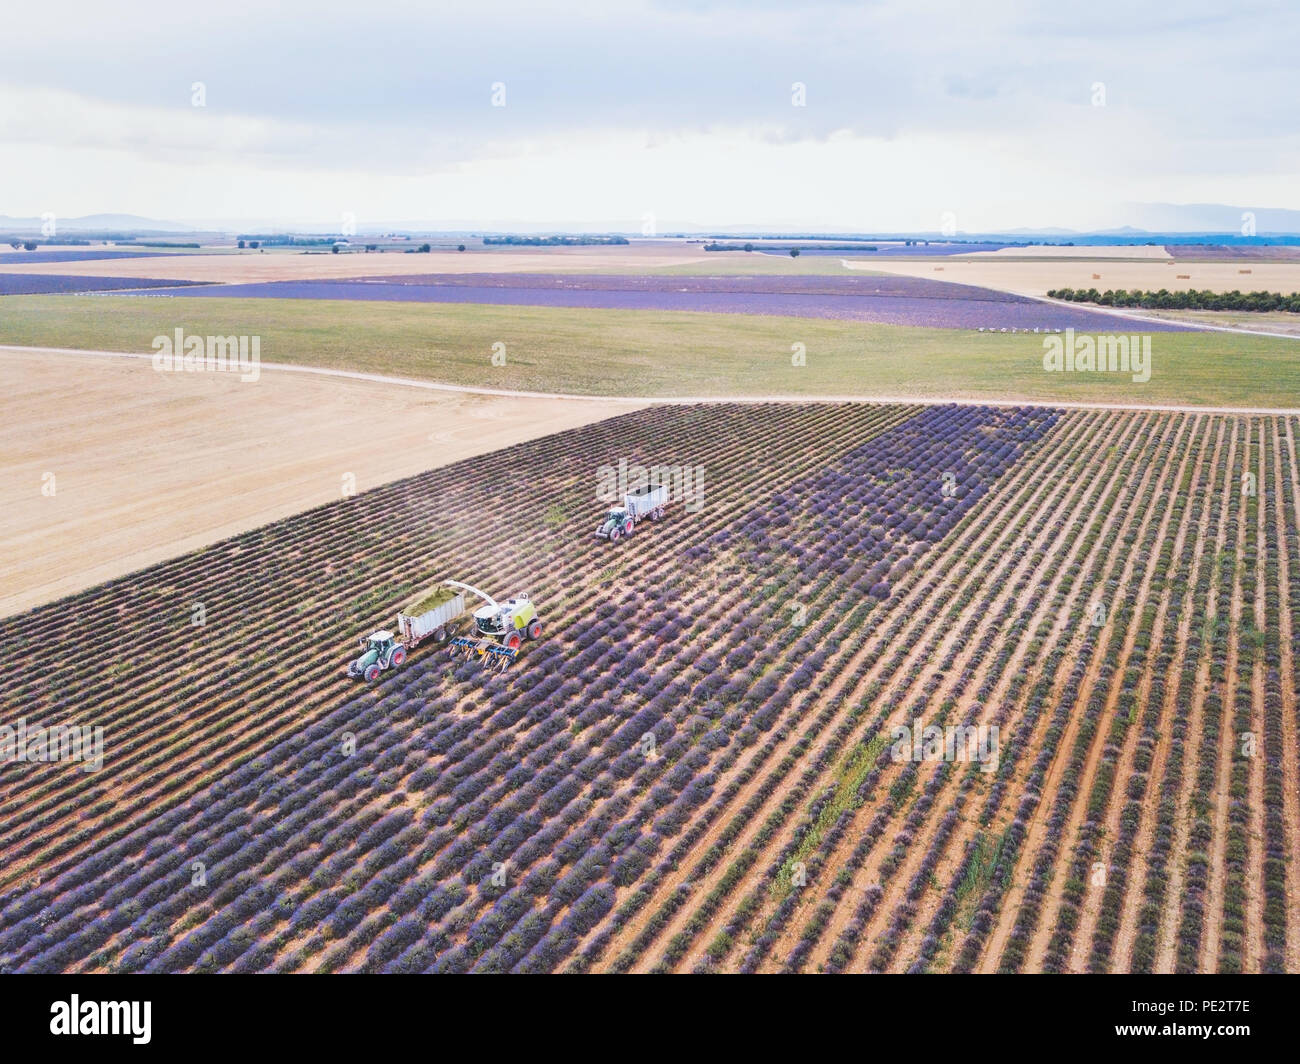 La récolte de lavande, vue aérienne de l'agriculteur récolte tracteur pour le parfum des fleurs en Provence, France Banque D'Images